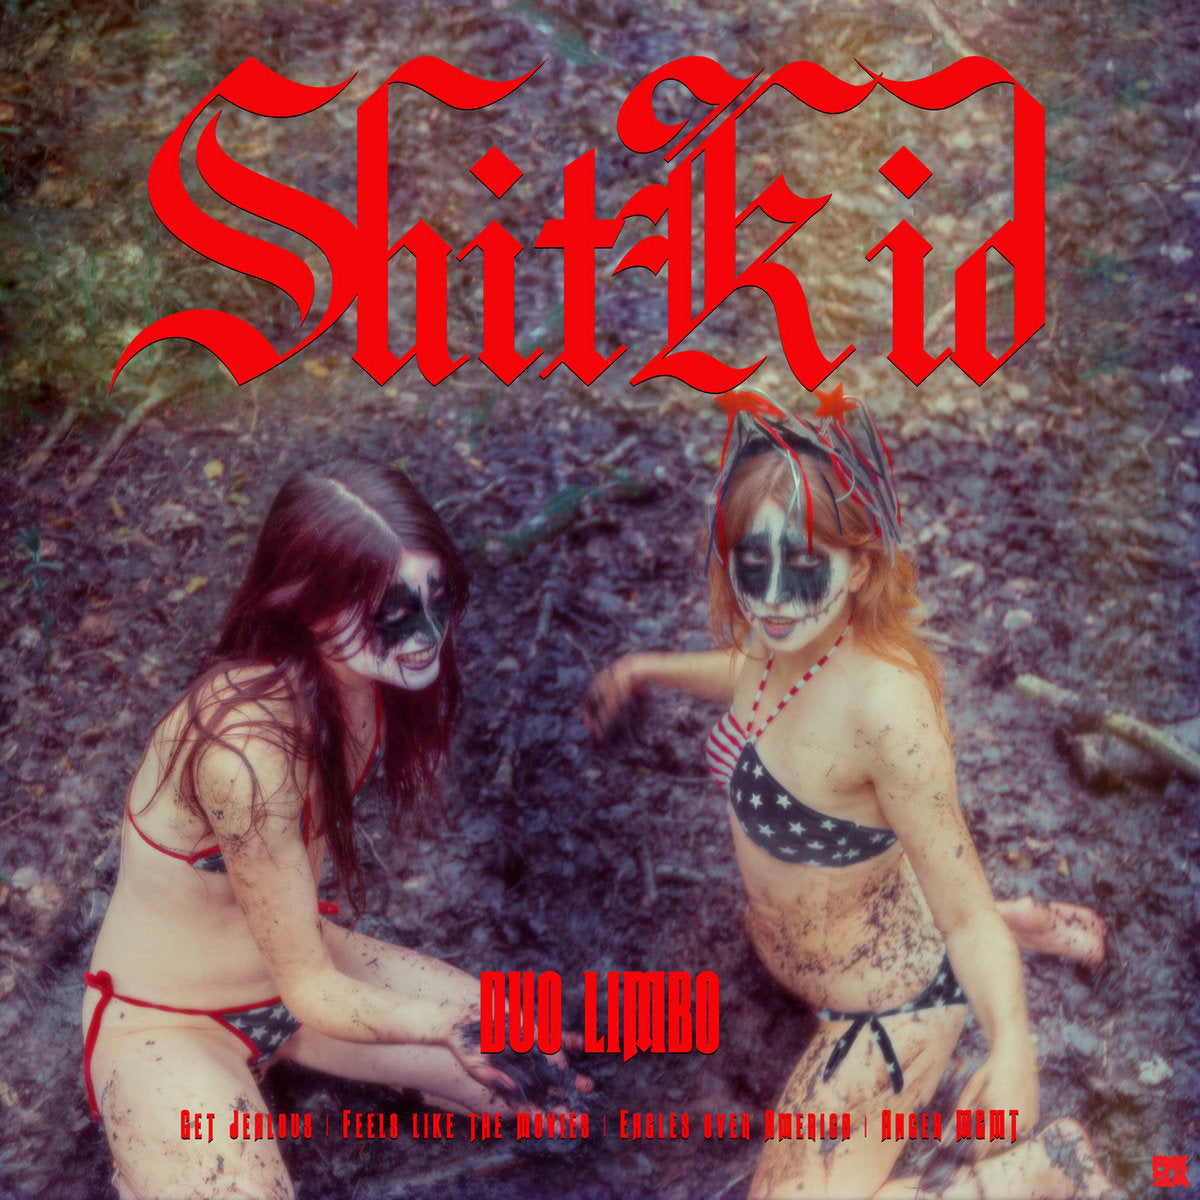 Shitkid - Duo Limbo / 'Mellan himmel å helvete'